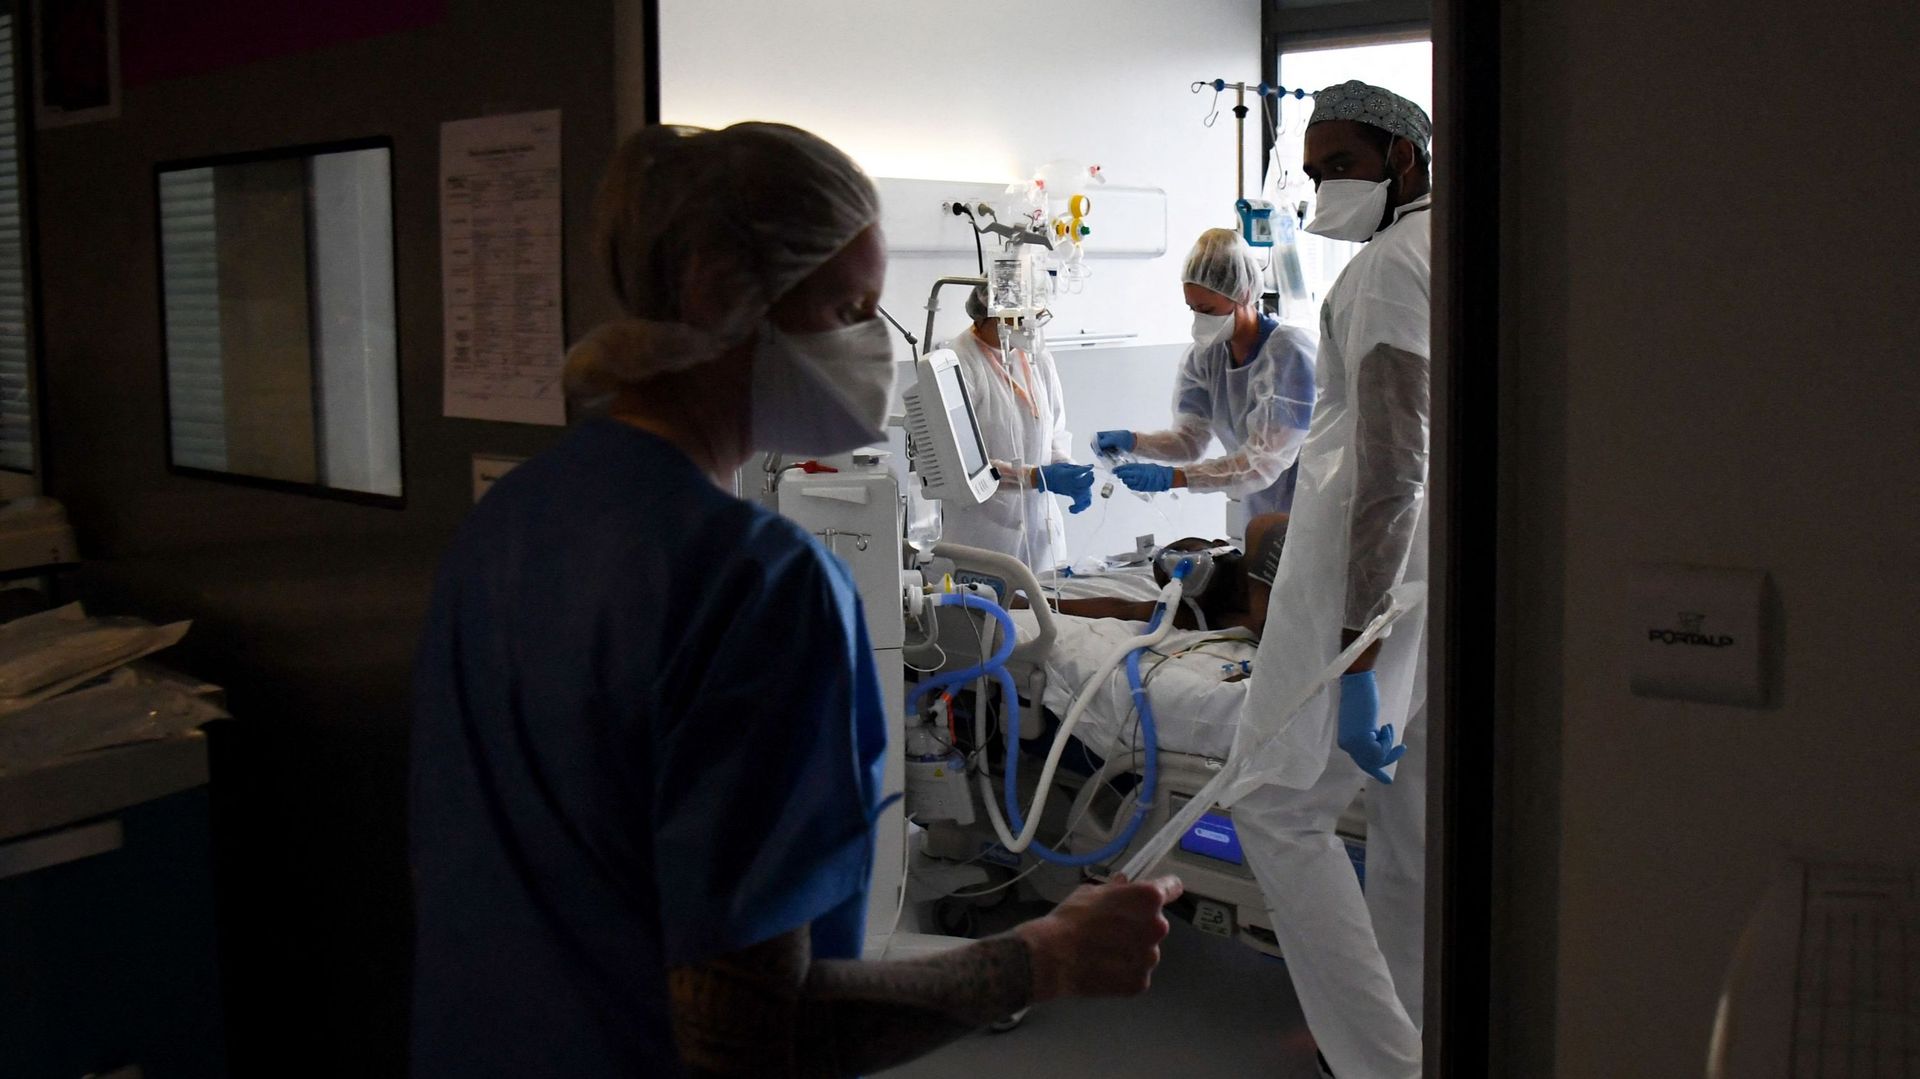 Des membres du personnel médical s'occupent d'un patient Covid-19 sous assistance respiratoire, dans une chambre du service de réanimation du centre hospitalier universitaire (CHU) Pierre Zobda-Quitman de Fort-de-France, sur l'île française de la Martiniq